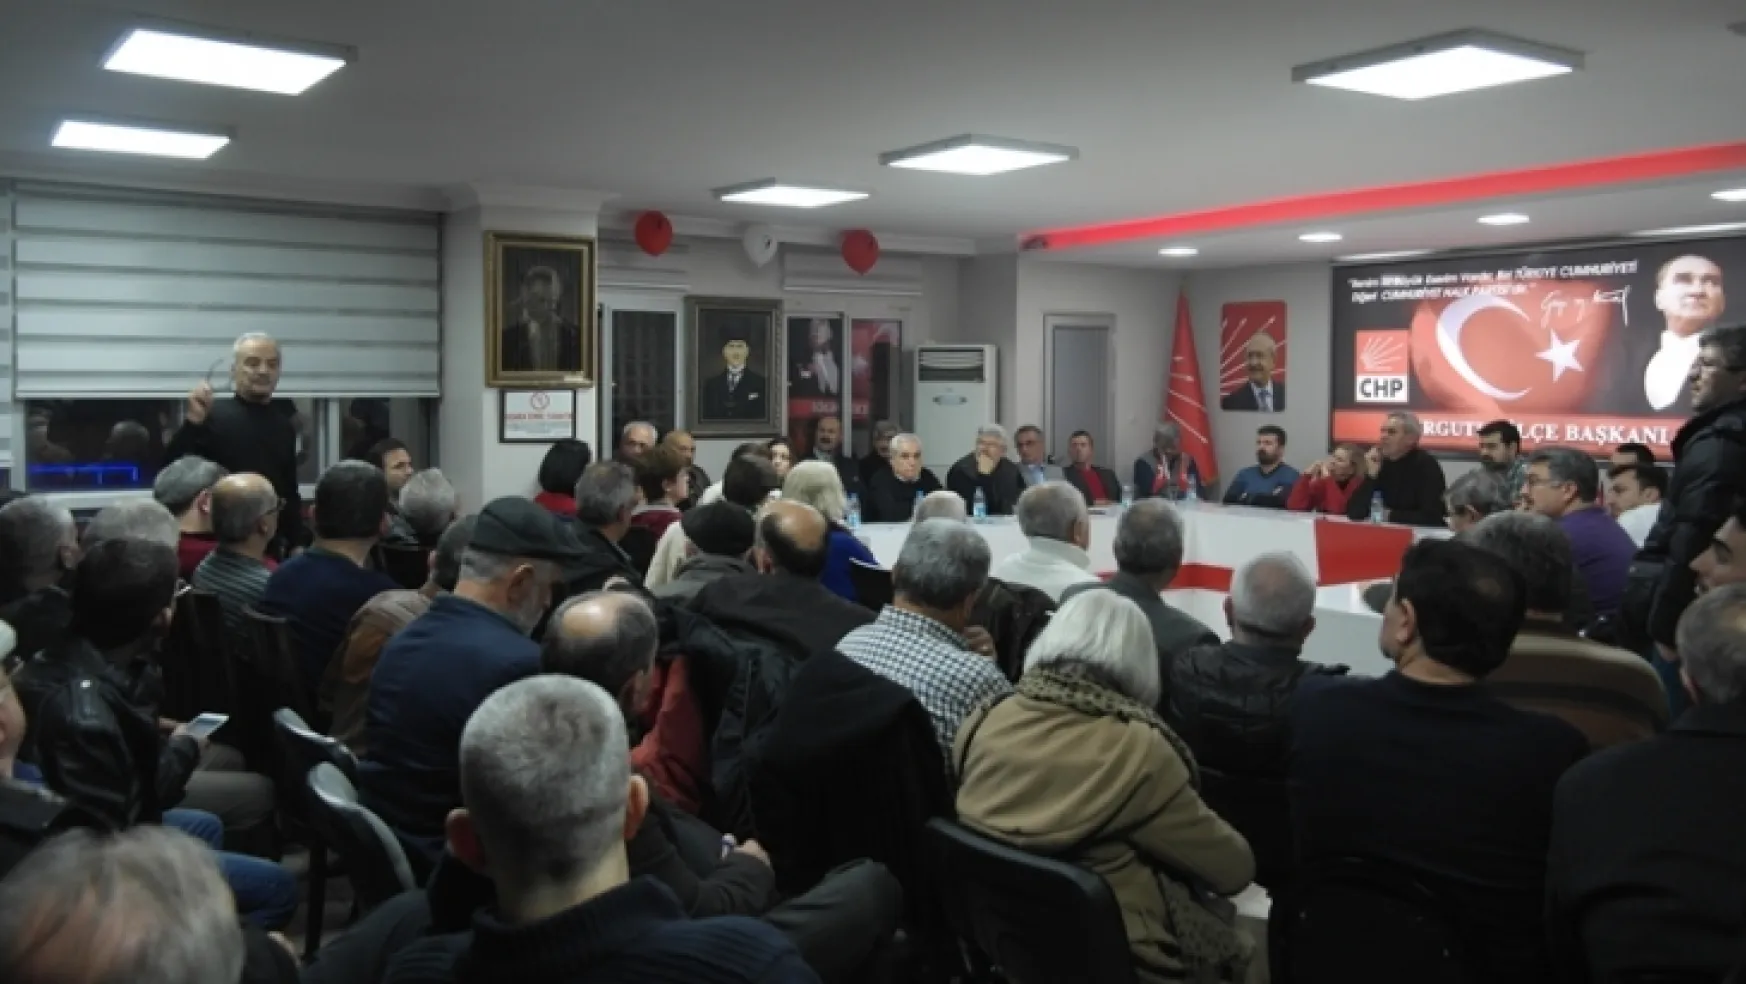 CHP Yeni yönetimi ilk geniş katılımlı toplantısını yaptı